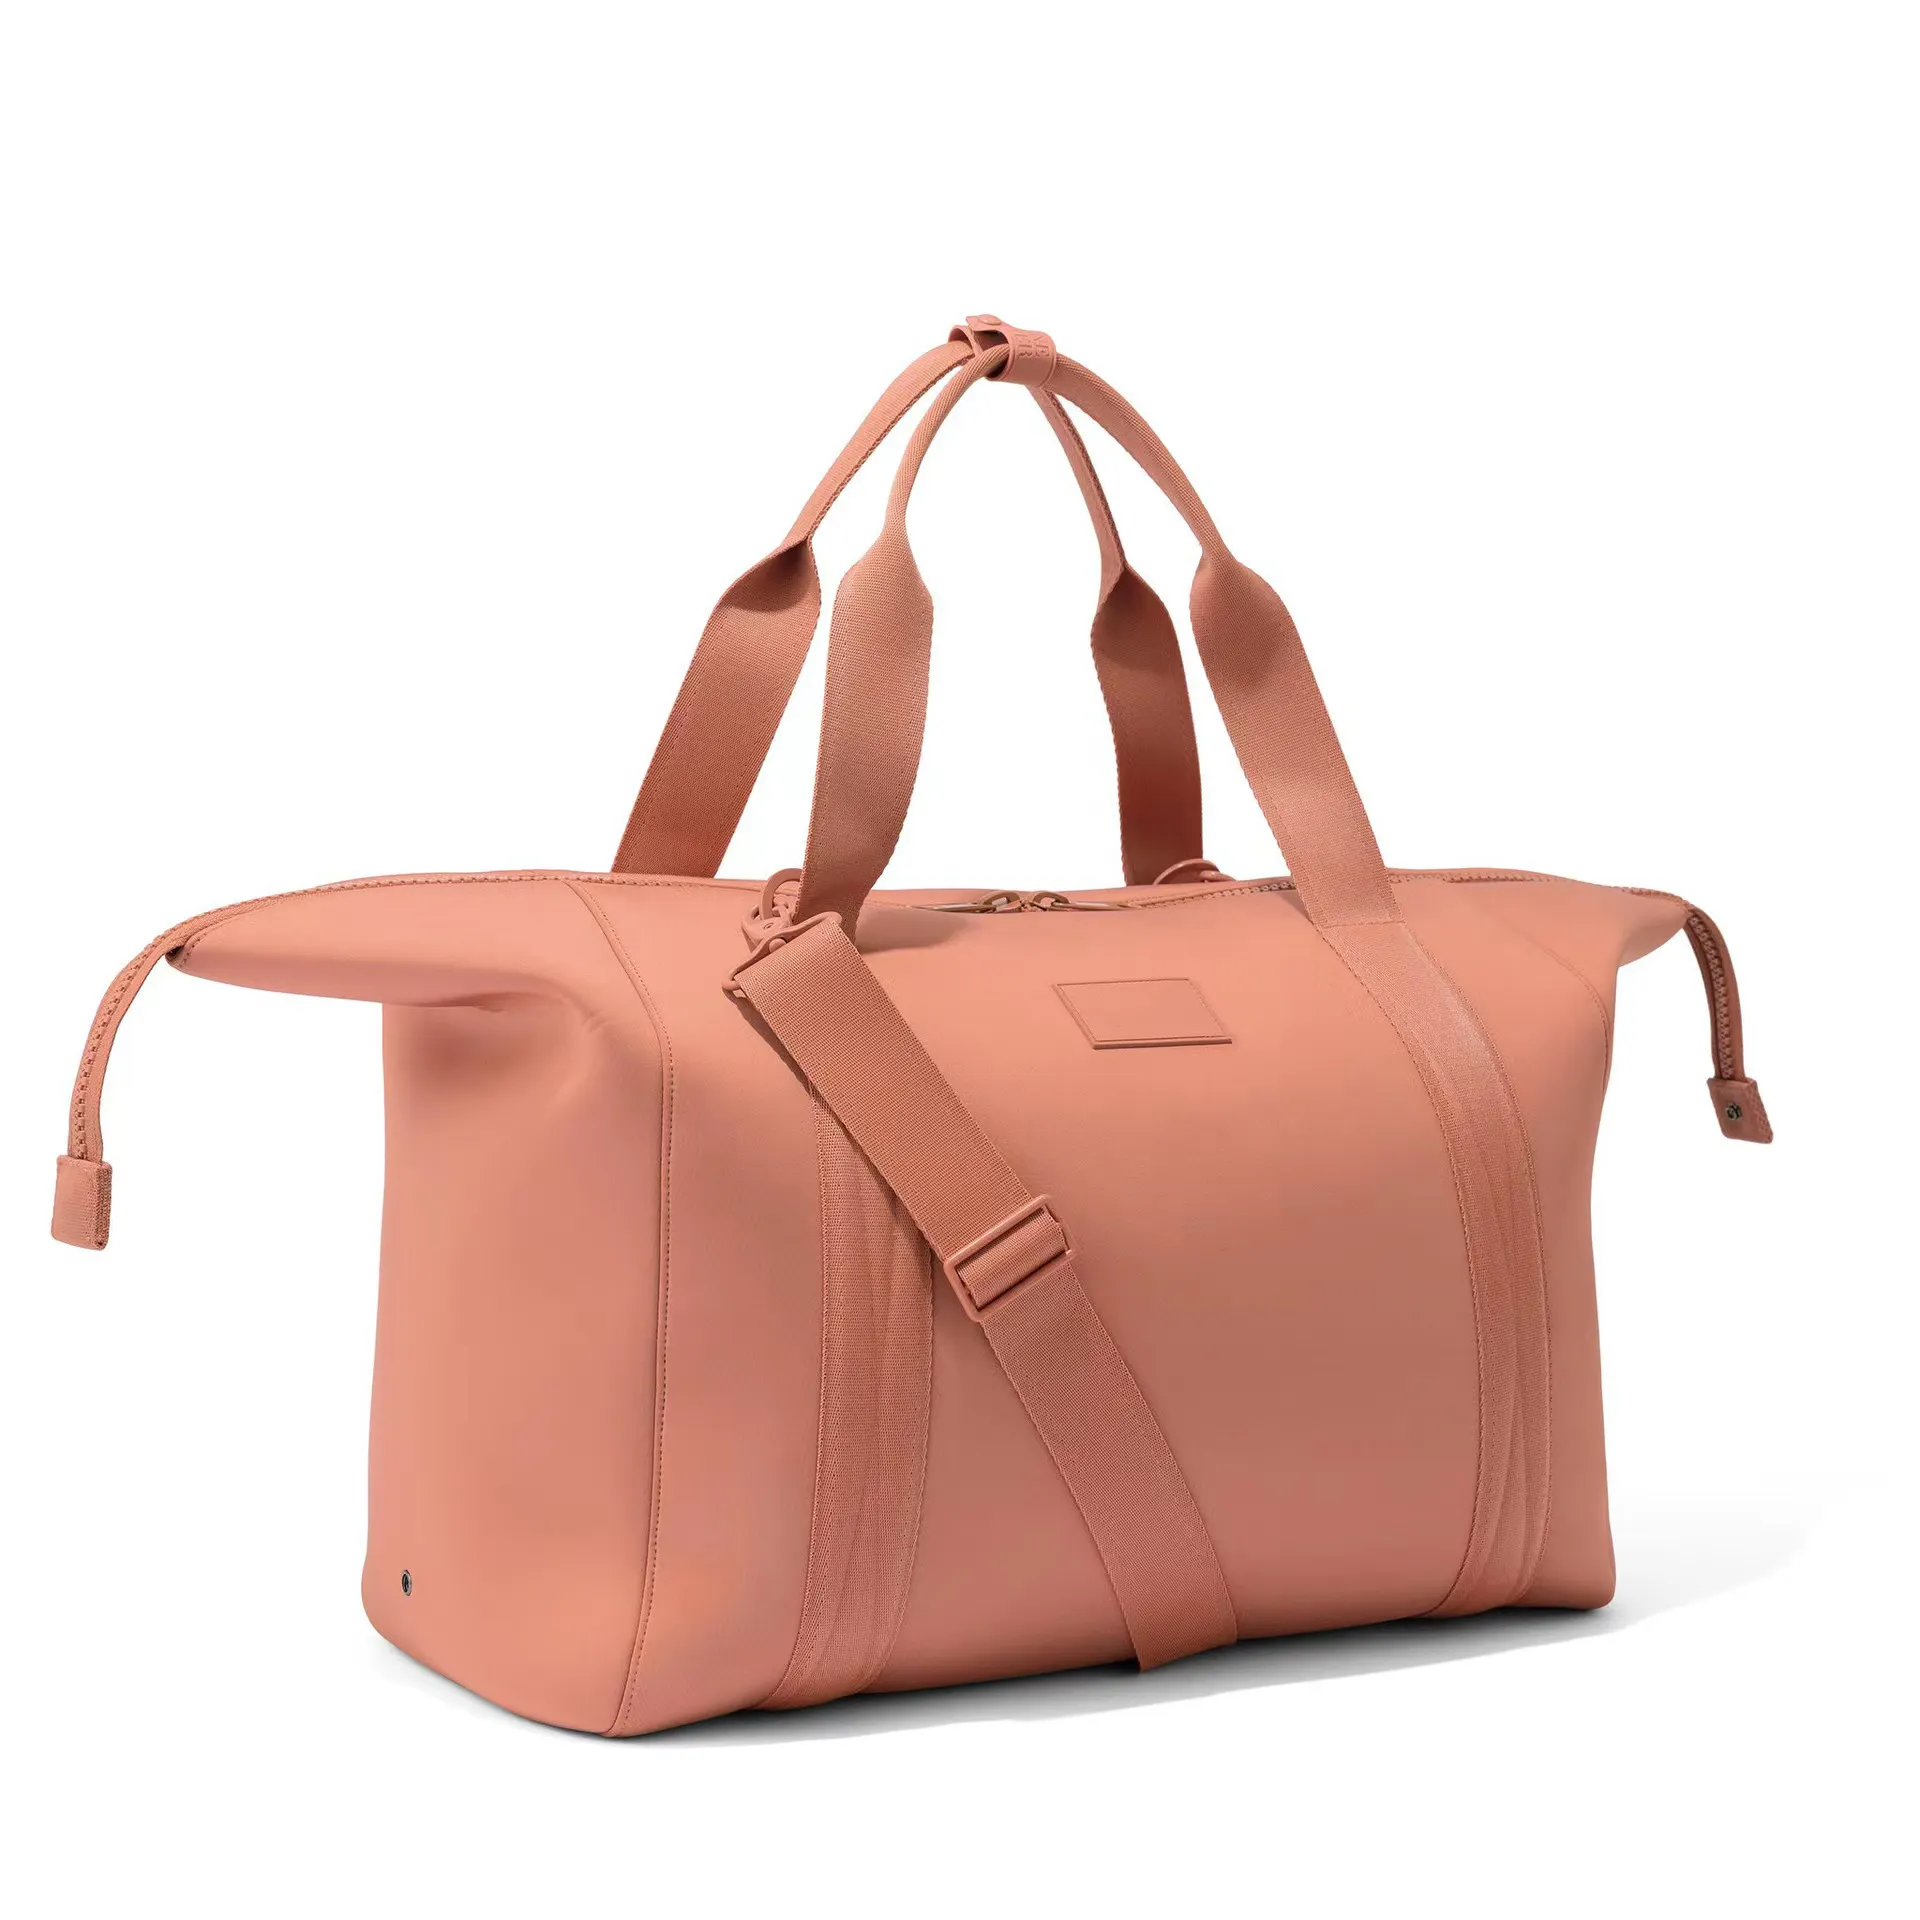 Yeni tasarım spor su geçirmez spor neopren Duffel çanta özel seyahat kozmetik kadın plaj çantası spor çantası